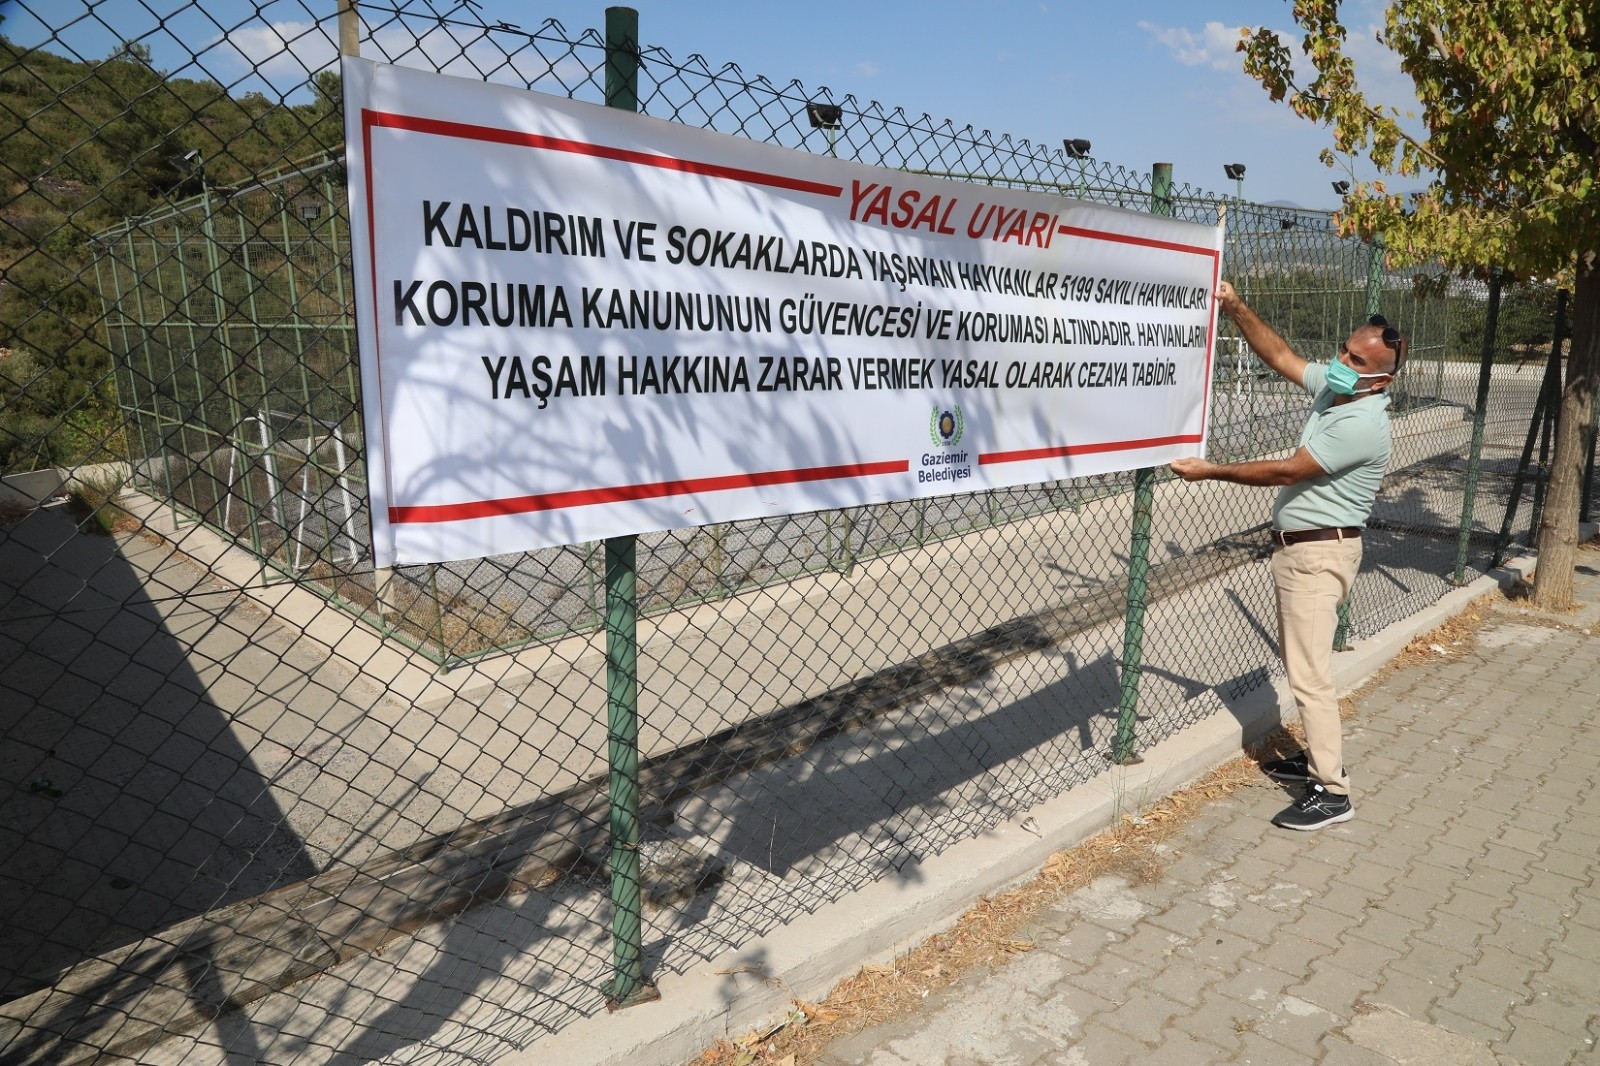 Gaziemir Belediyesi, can dostların yaşam hakkına dikkat çekiyor